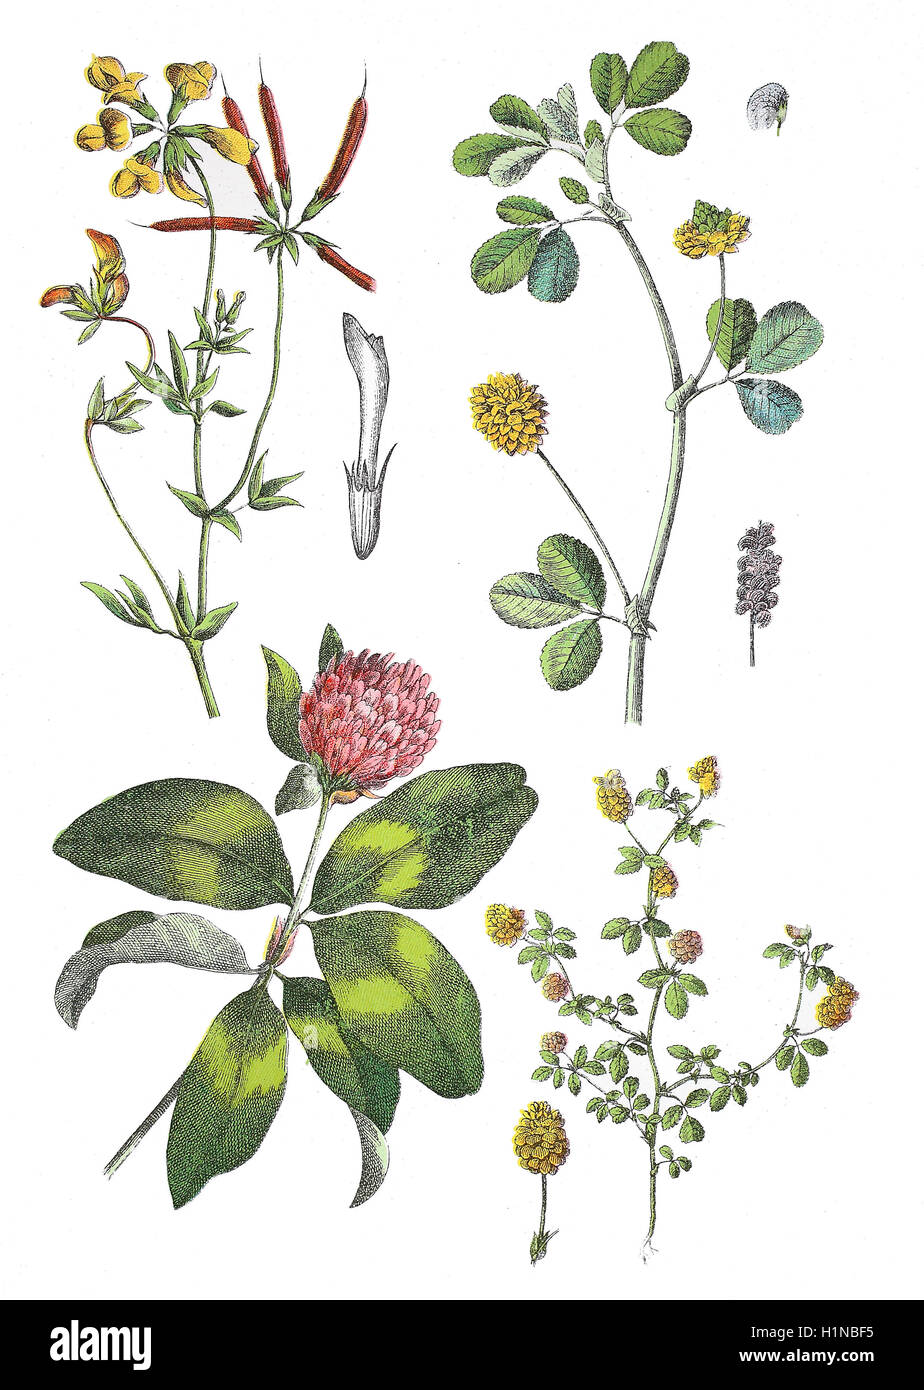 common bird's-foot trefoil, Lotus corniculatus (top left), black medick, Medicago lupulina (top right), red clover, Trifolium pratense (bottem left), field clover, Trifolium campestre (bottem right) Stock Photo